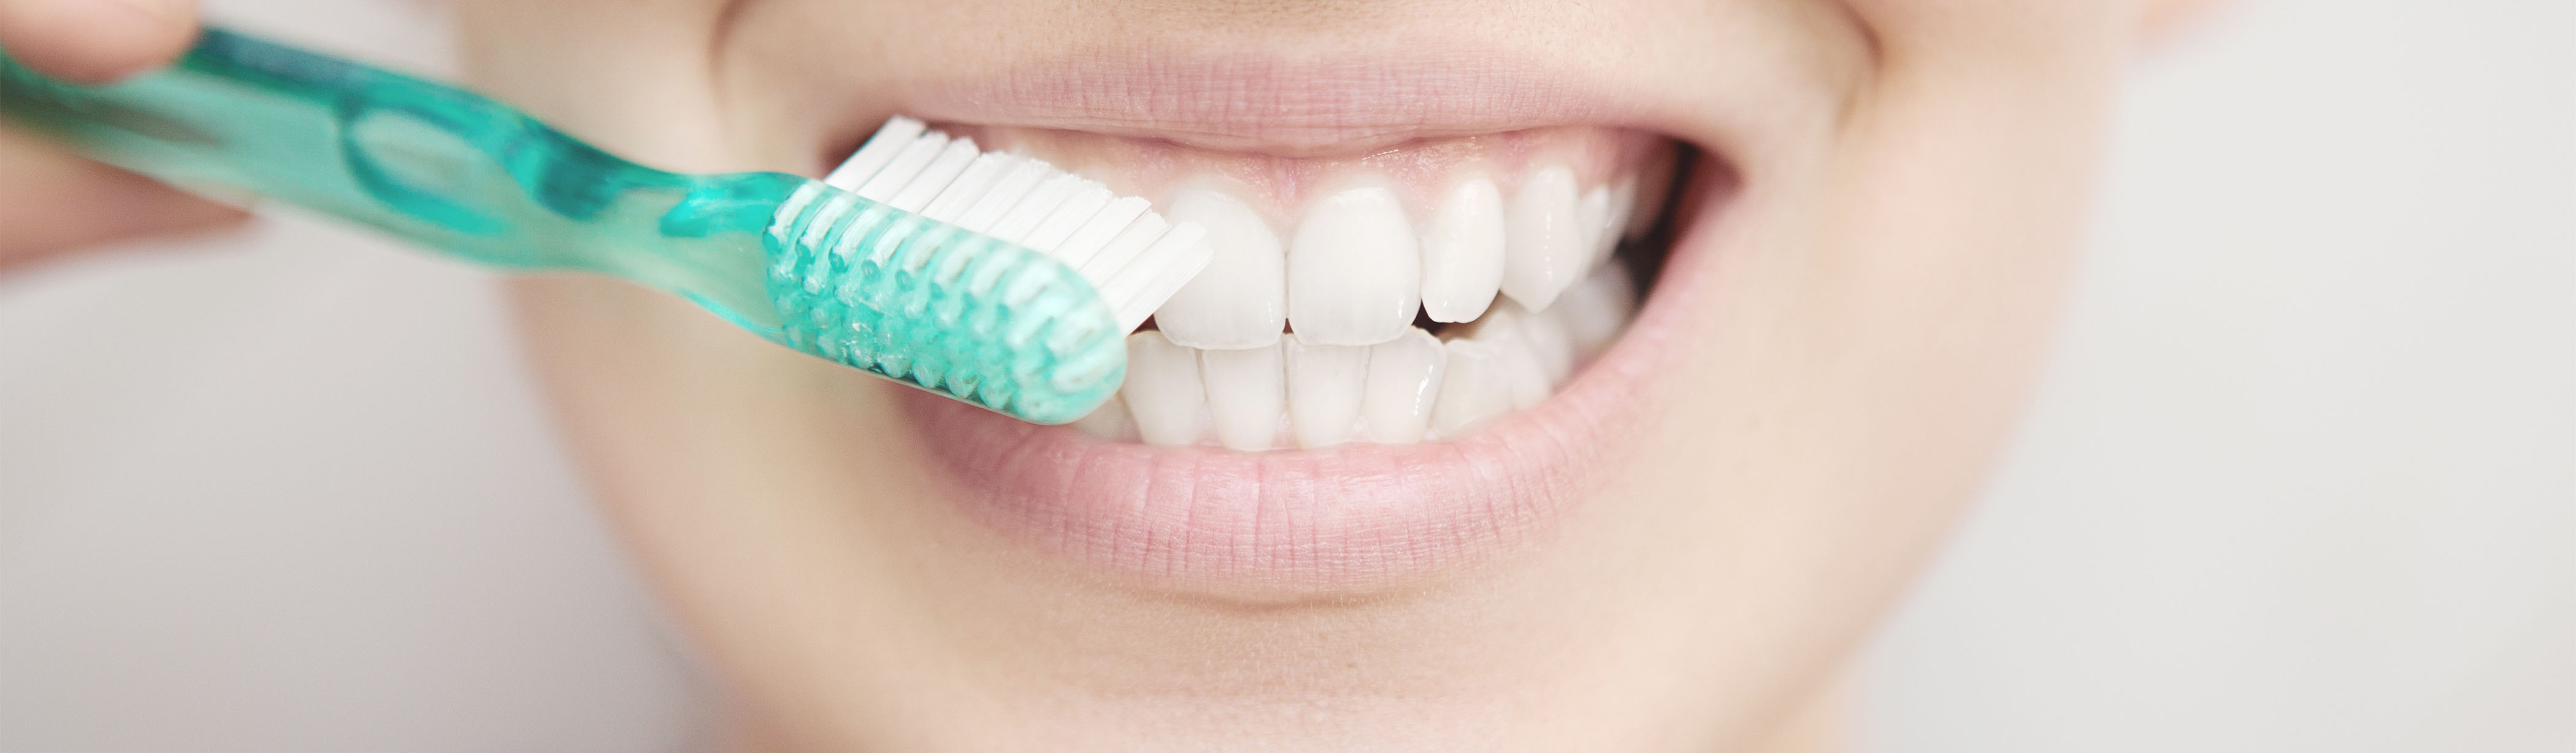 Tooth Brushing: 5 Fun Facts